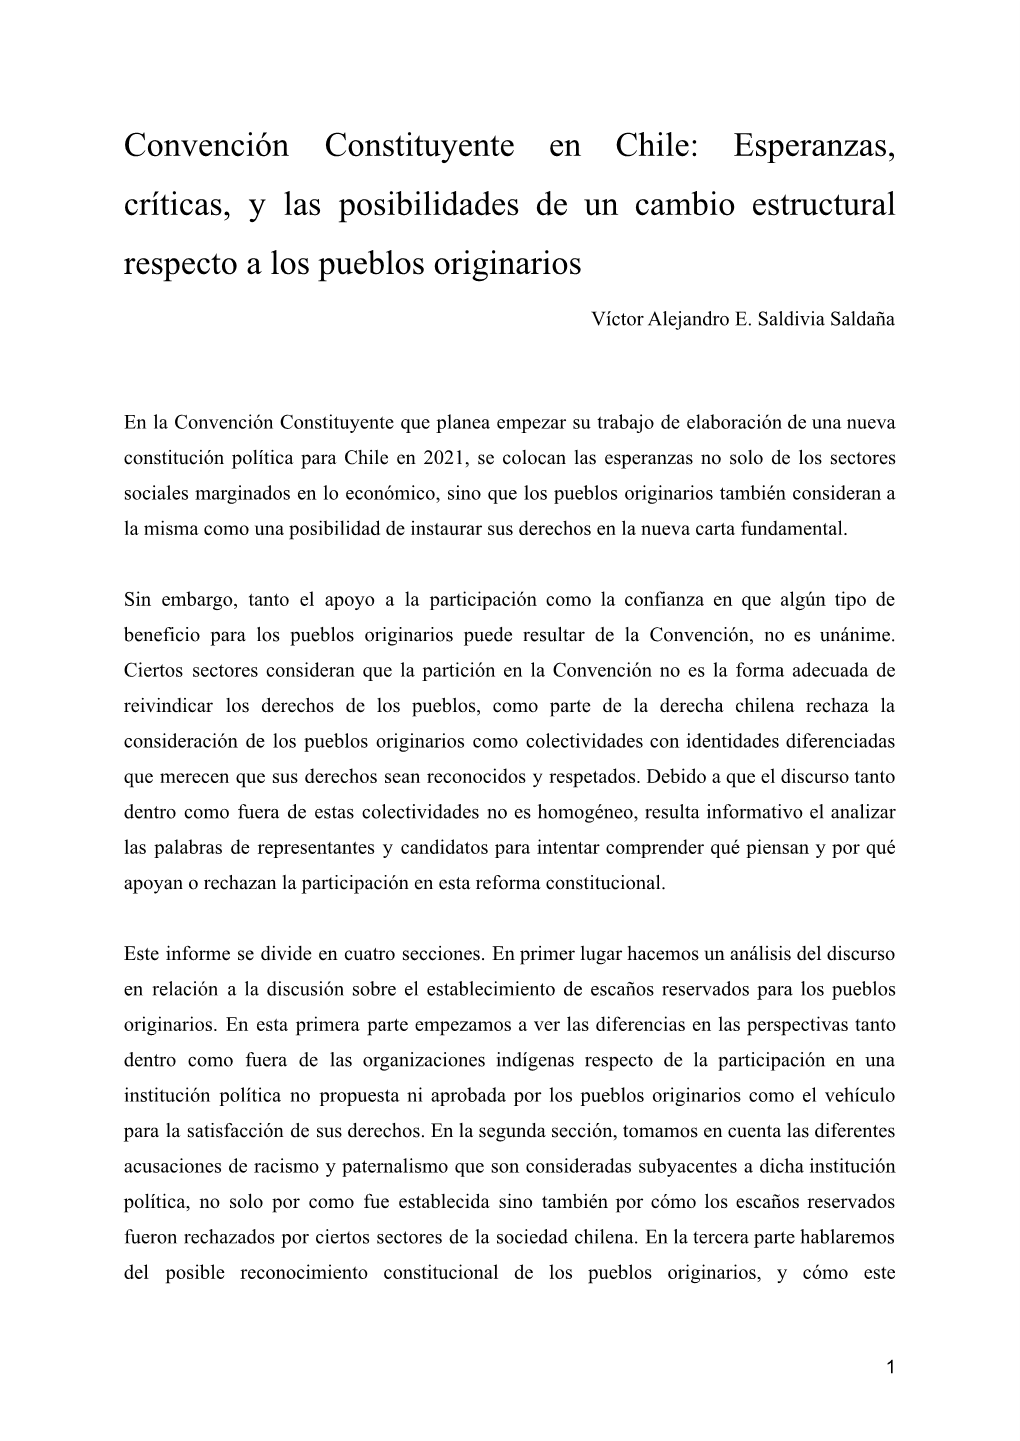 Convención Constituyente En Chile: Esperanzas, Críticas, Y Las Posibilidades De Un Cambio Estructural Respecto a Los Pueblos Originarios